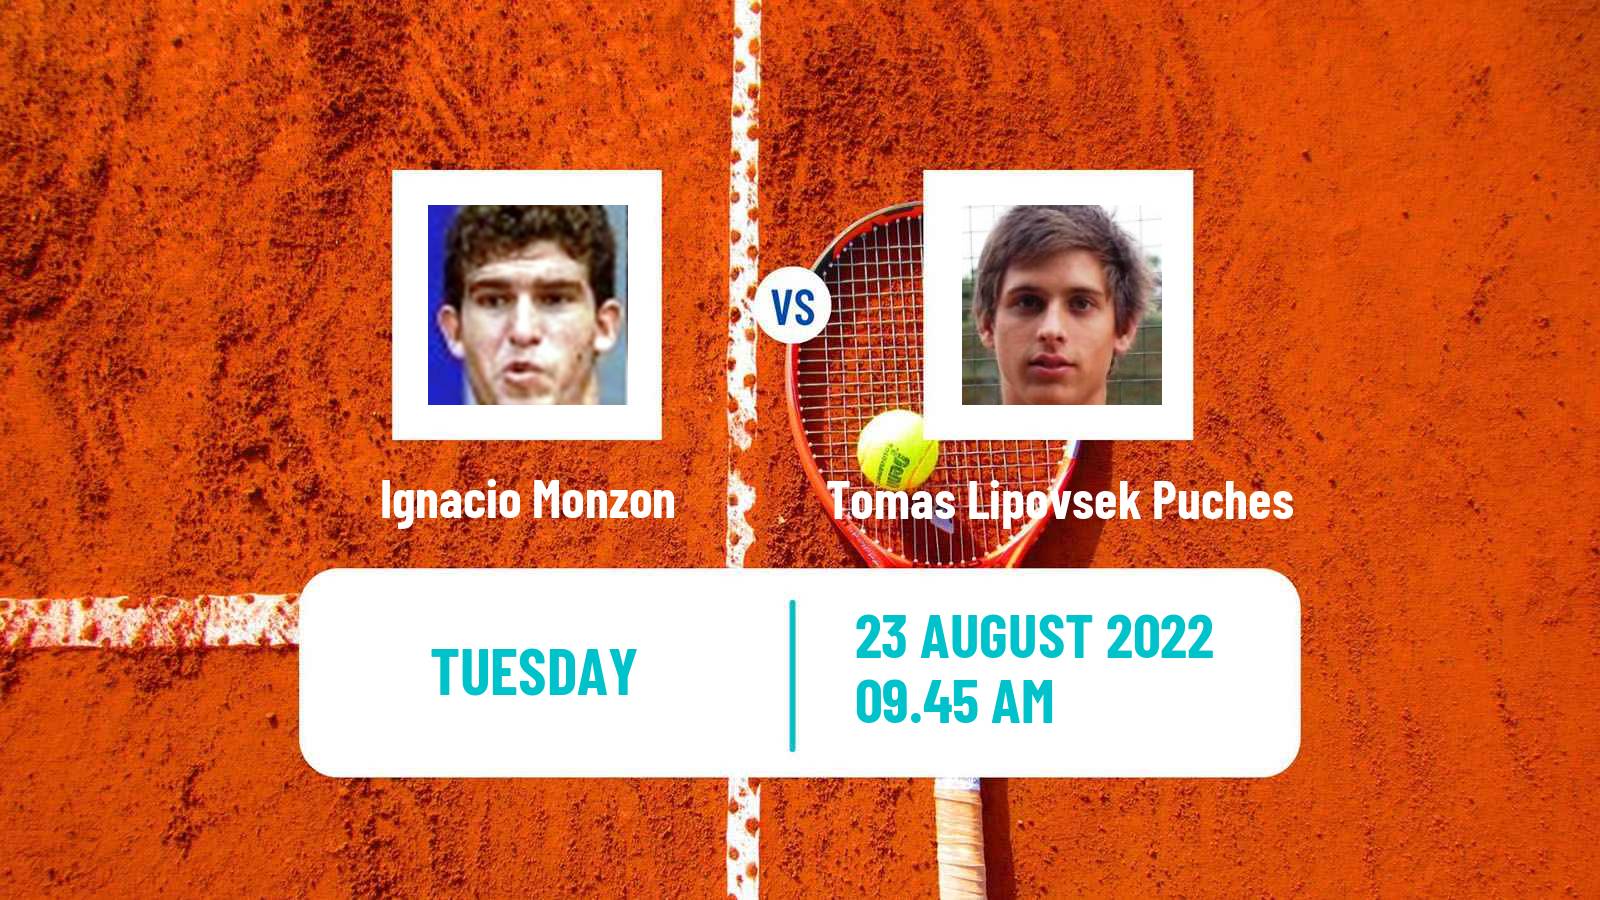 Tennis ITF Tournaments Ignacio Monzon - Tomas Lipovsek Puches